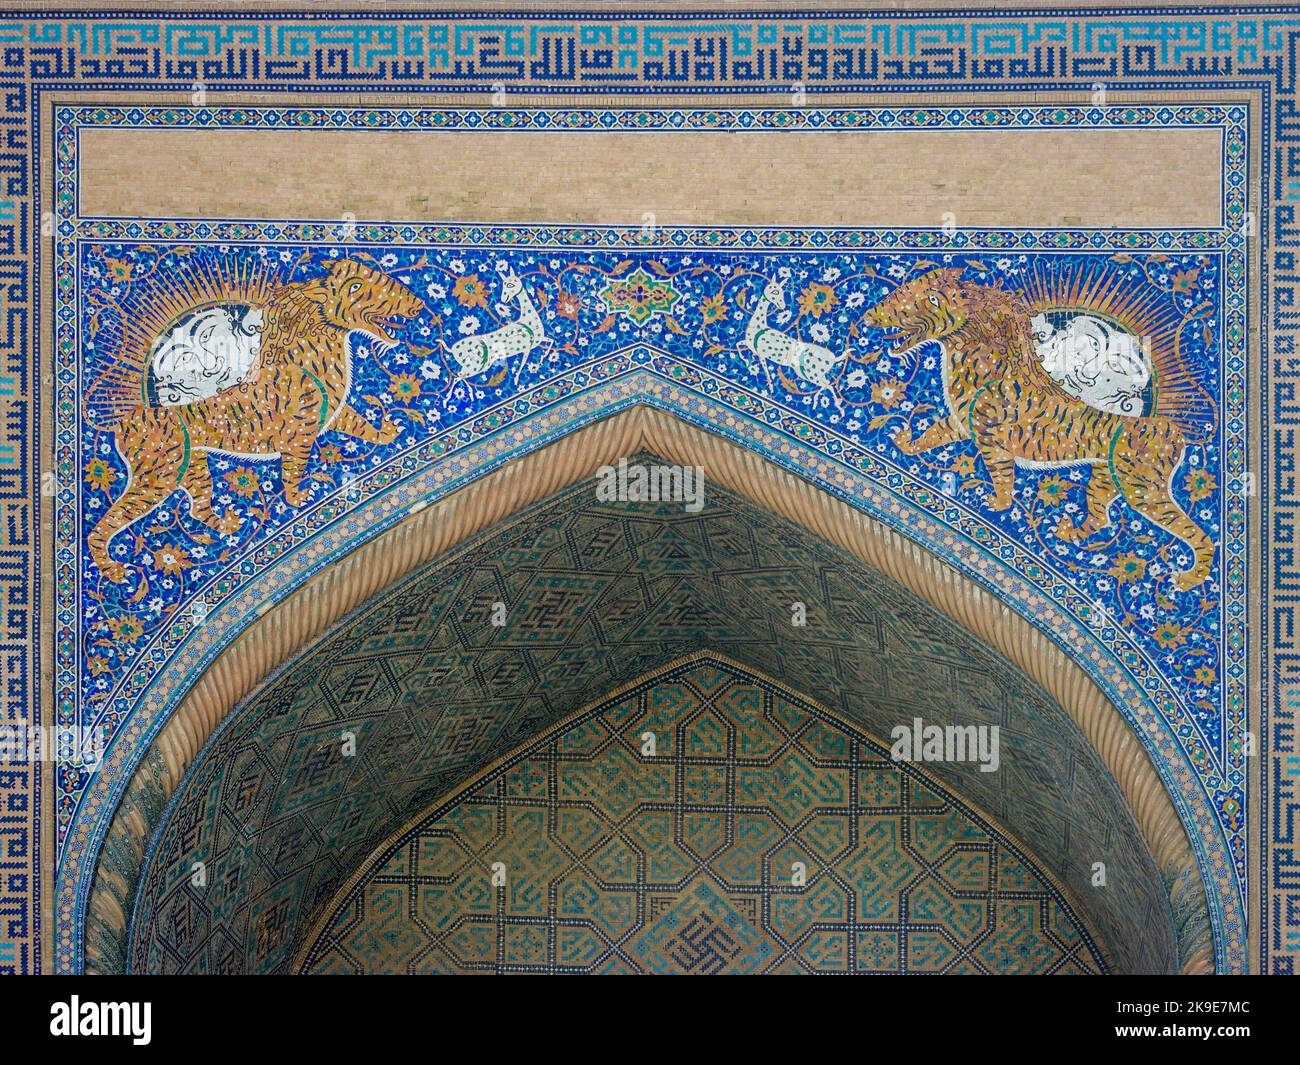 Belle mosaïque avec le symbole du tigre et du soleil sur iwan de Sher Dor madrassa, classé au patrimoine mondial de l'UNESCO, Samarkand, Ouzbékistan Banque D'Images